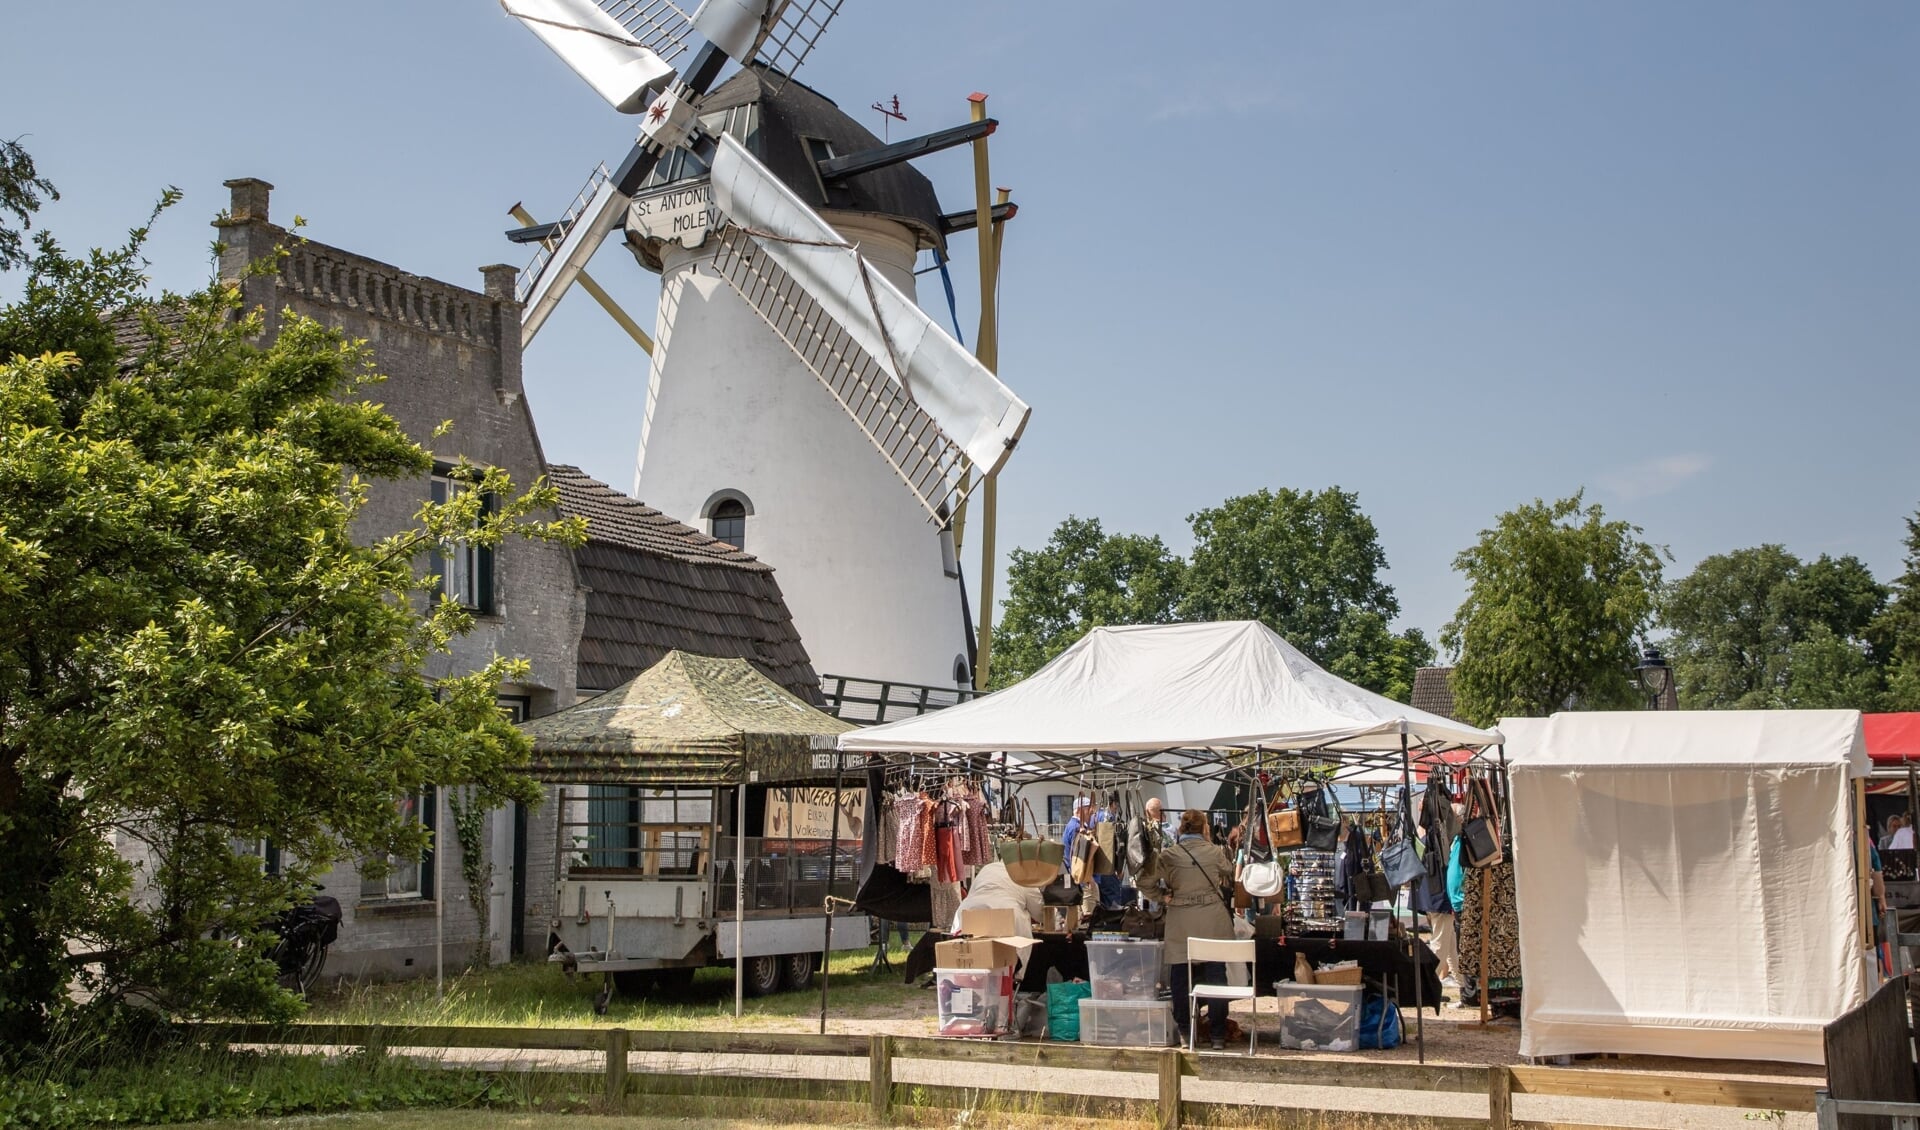 Onder de molen in Borkel en Schaft vindt zaterdag 3 juni weer de MolenMarkt plaats met lokale producten.